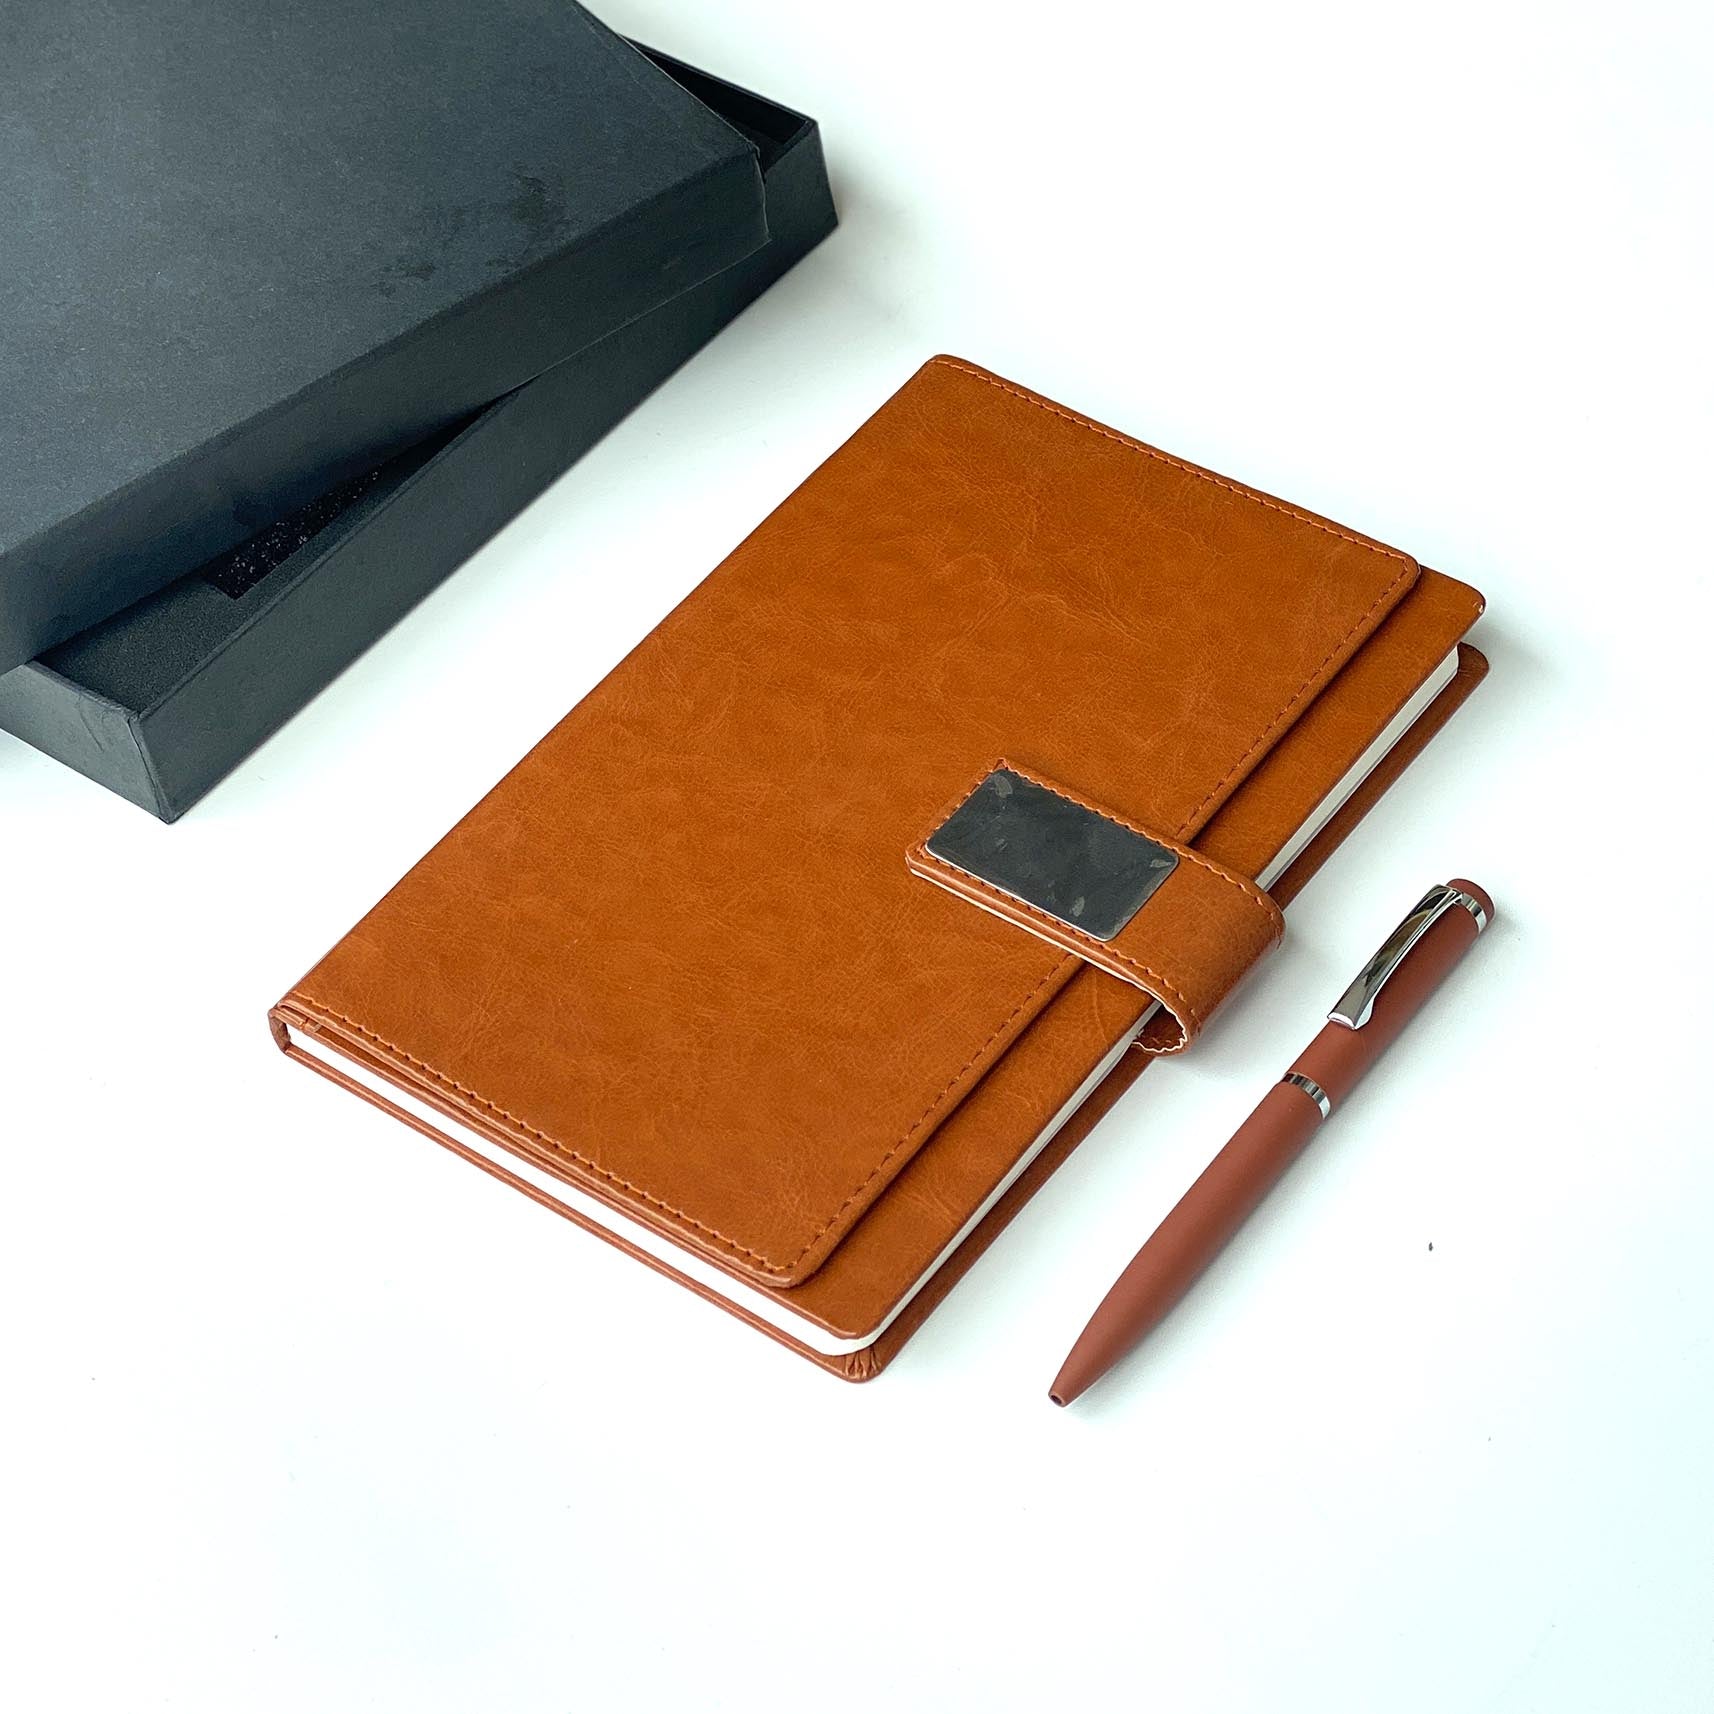 Corporate Gift With NotePad & Pen - Orbiz Creativez